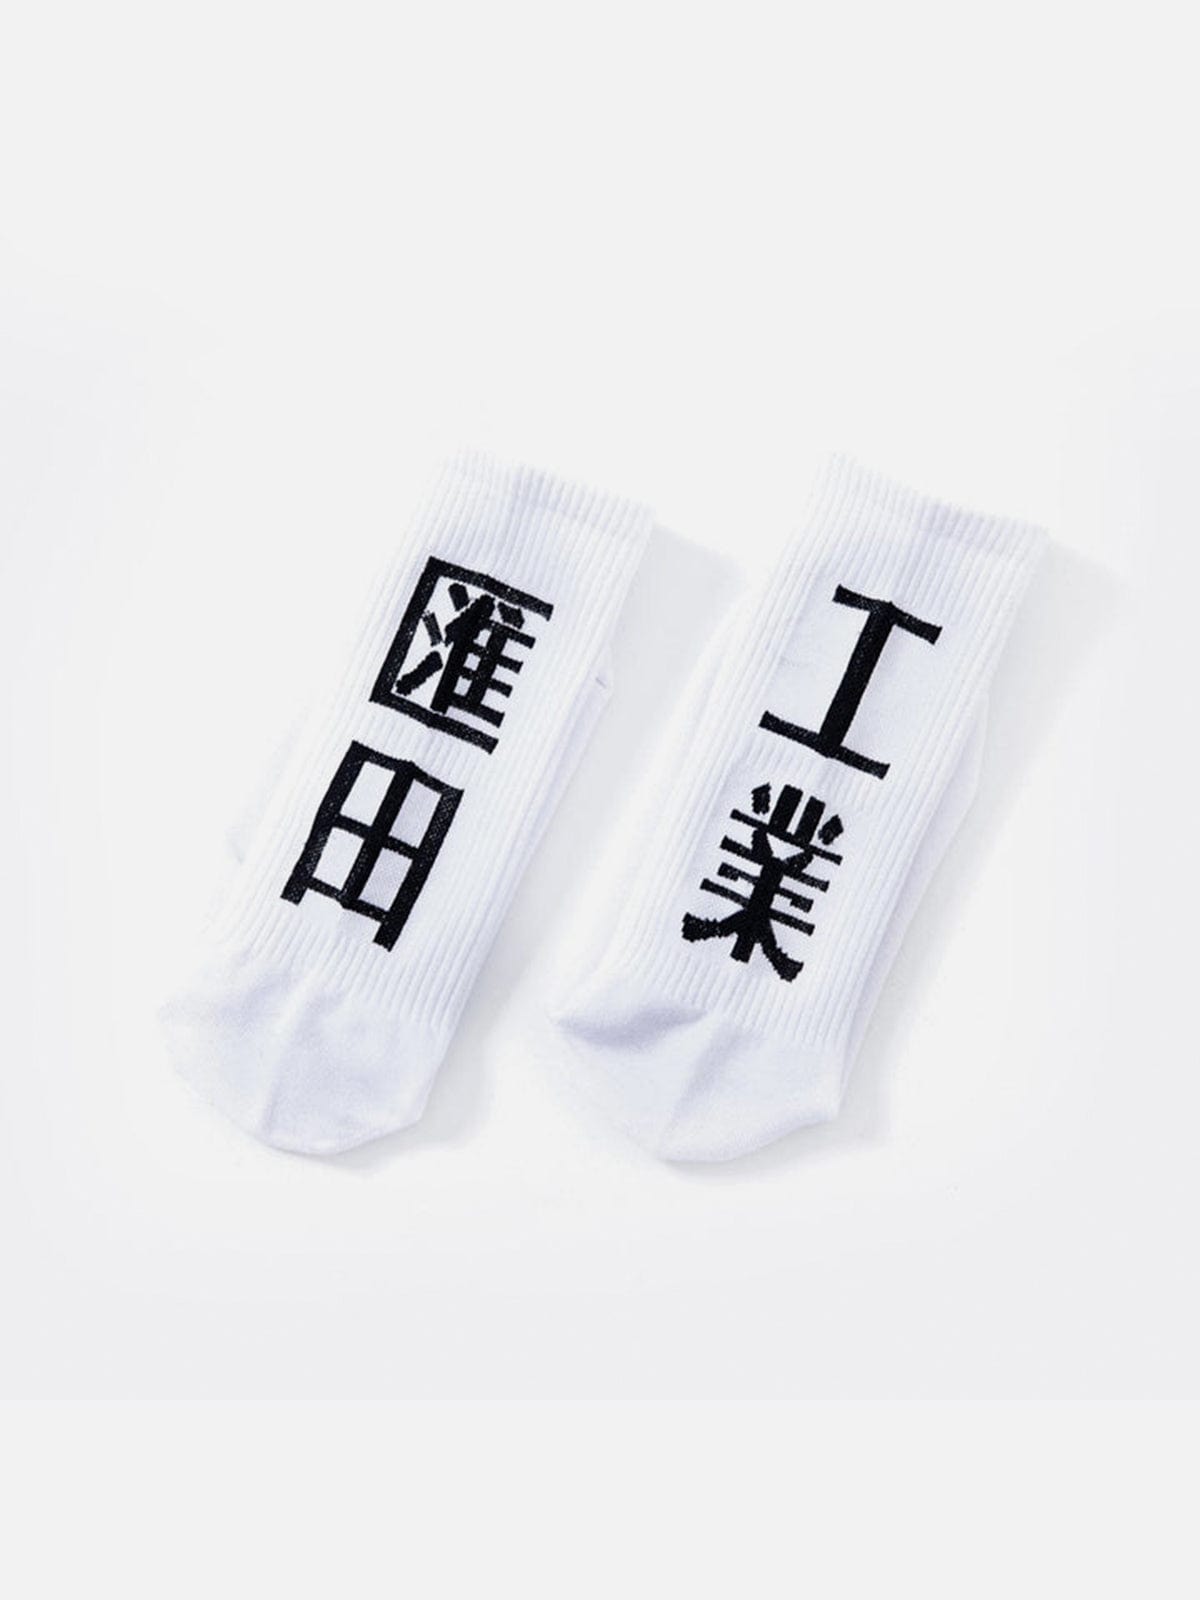 Function Huitian Industry Socks Streetwear Brand Techwear Combat Tactical YUGEN THEORY